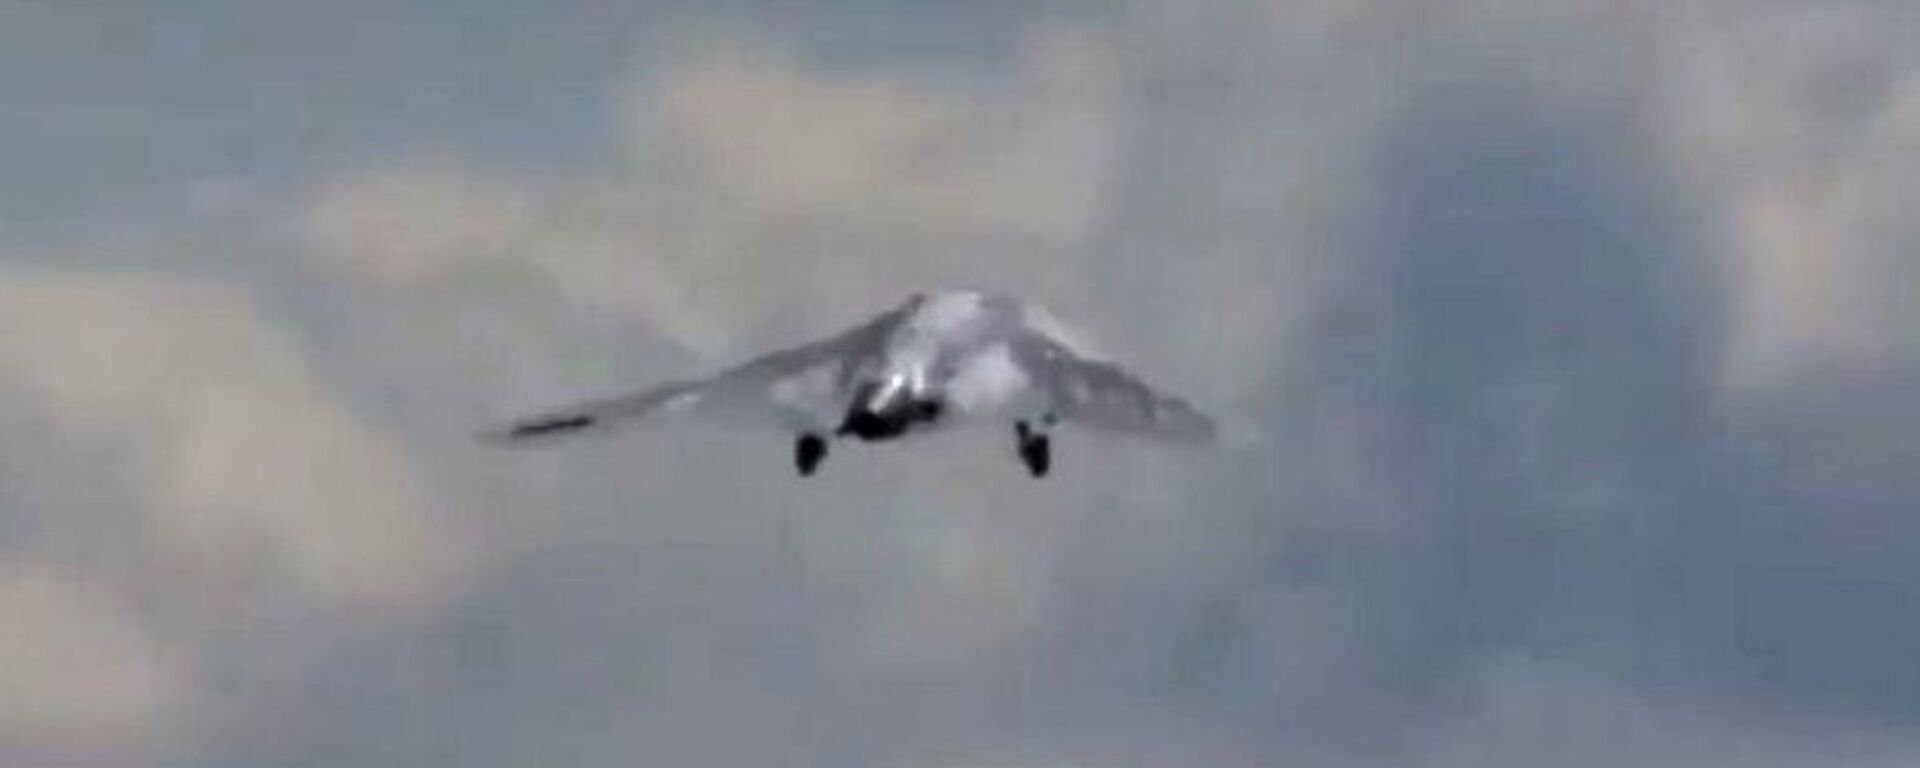 بمباران پهپاد اوریون روسی در سوریه طوفان کرد + ویدیو - اسپوتنیک افغانستان  , 1920, 22.02.2021